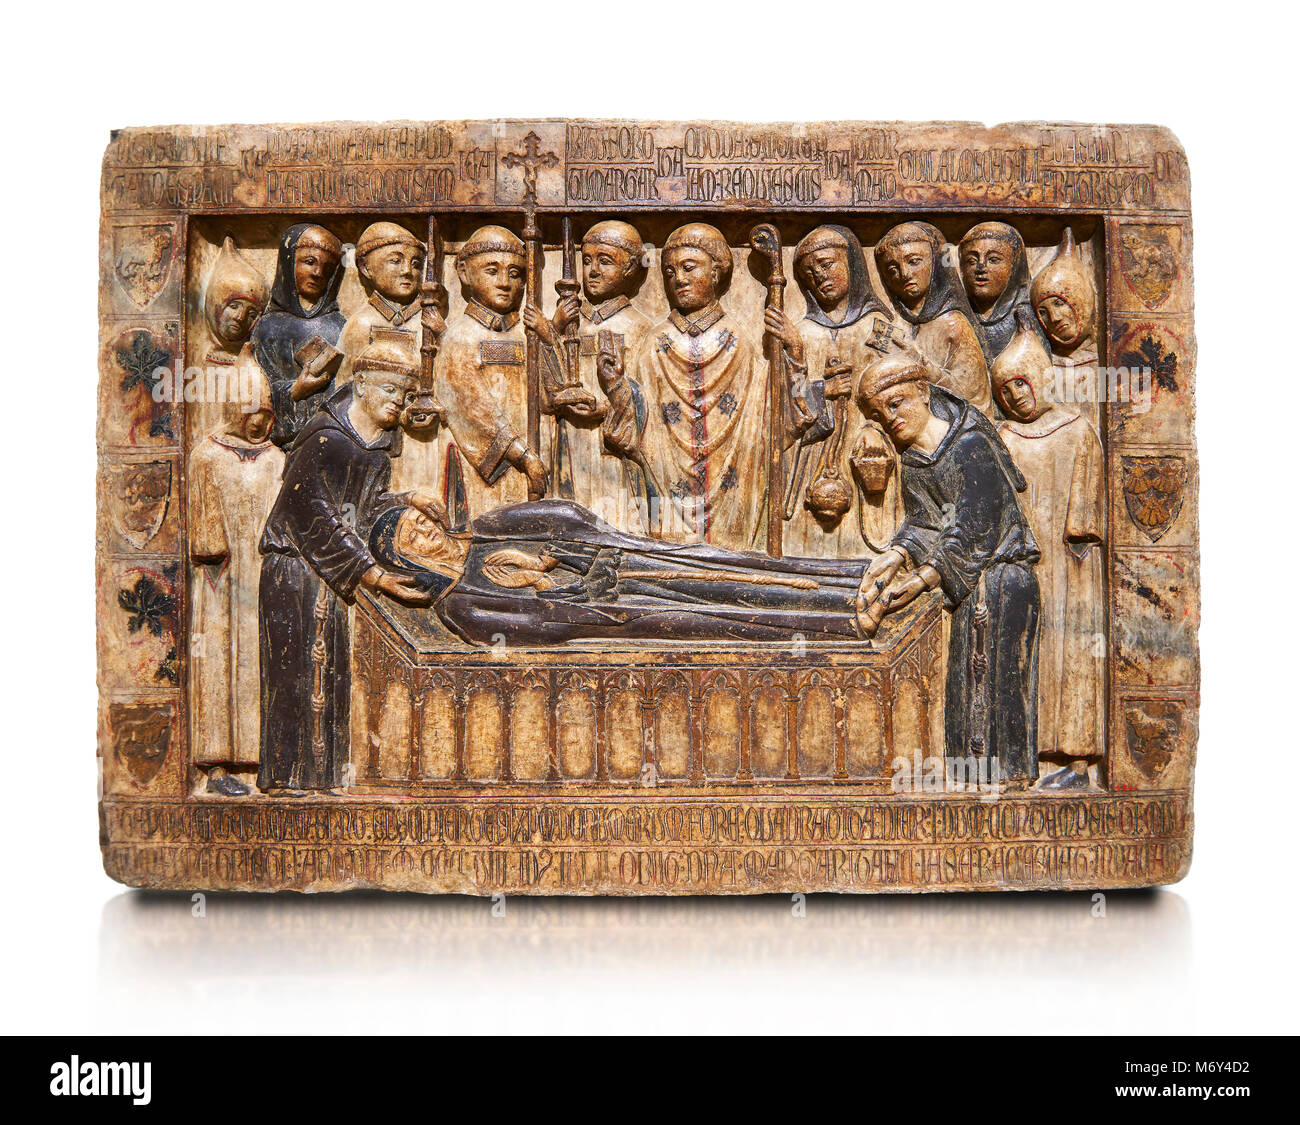 Gótico Catalán socorro de la escultura de mármol de la tumba de Margarida Cadell, murió 1308, desde el convento de Sant Domenee de Puigcerdà, La Cerdanya, España. Foto de stock